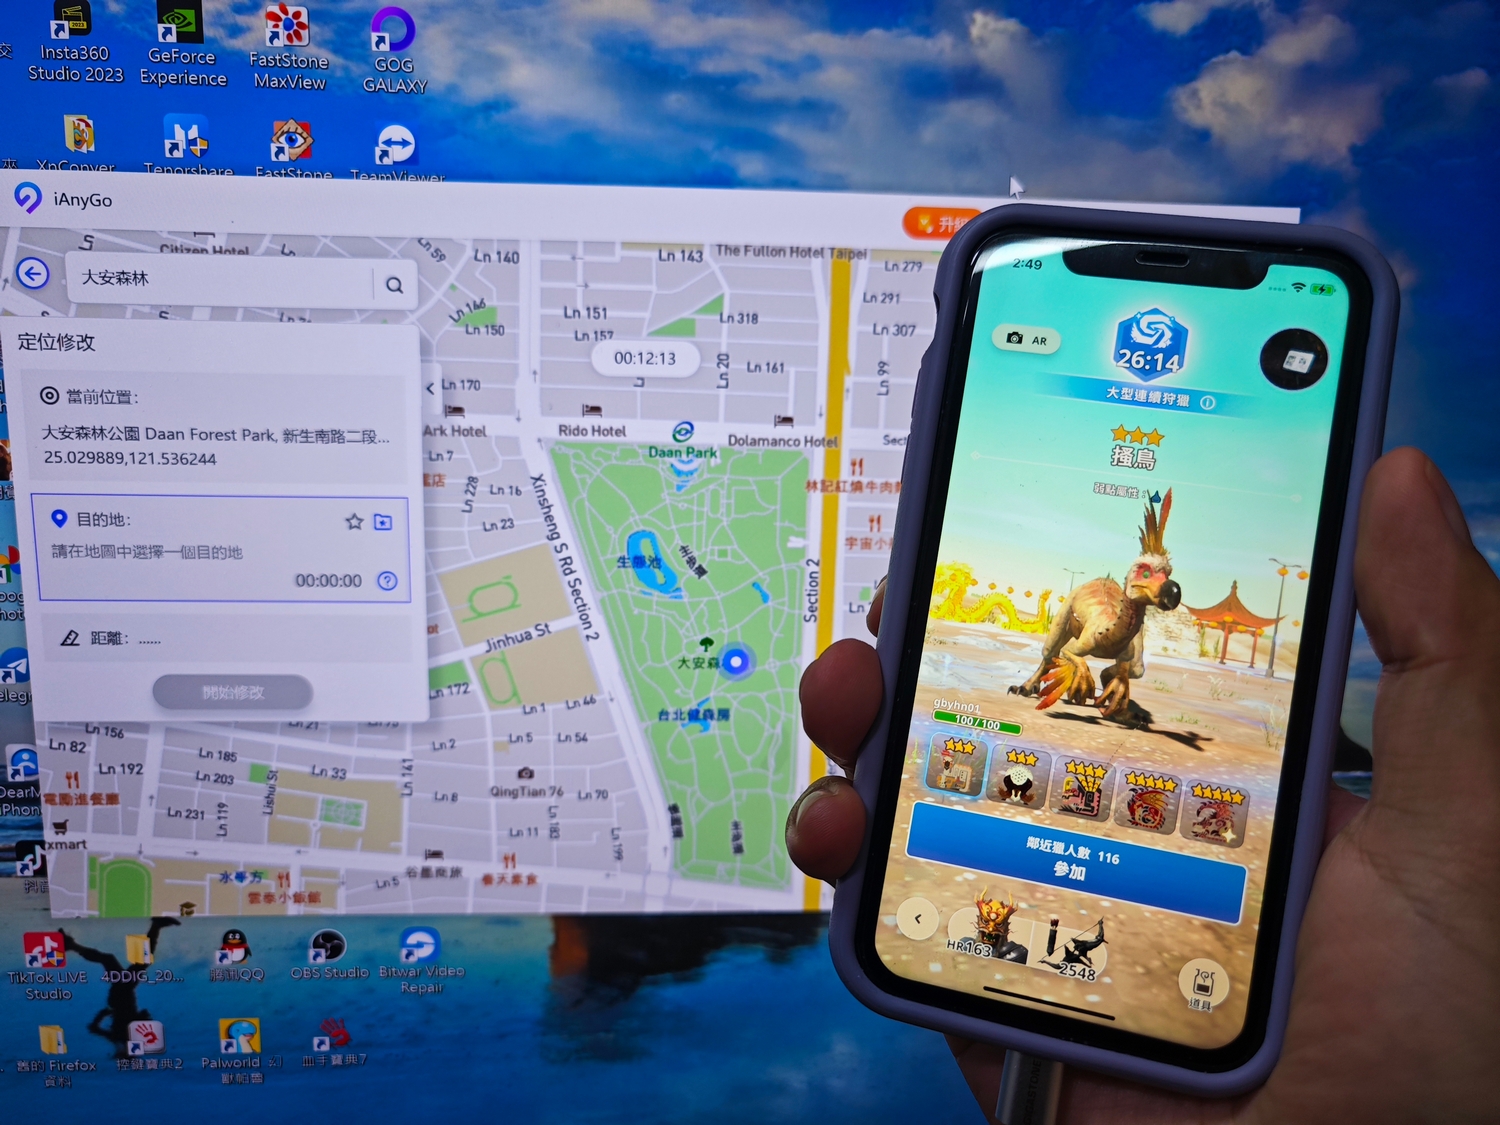 2024最新【iOS17飛人】魔物獵人MHNow、寶可夢最強的GPS虛擬定位。 - 外掛, 魔物獵人, 敗家達人, 敗家輝哥, 寶可夢, 虛擬定位, 老司機推薦, 編輯推薦, 飛人, GPS, IOS17, iOS17飛人, 2024, MHNow - 敗家達人推薦